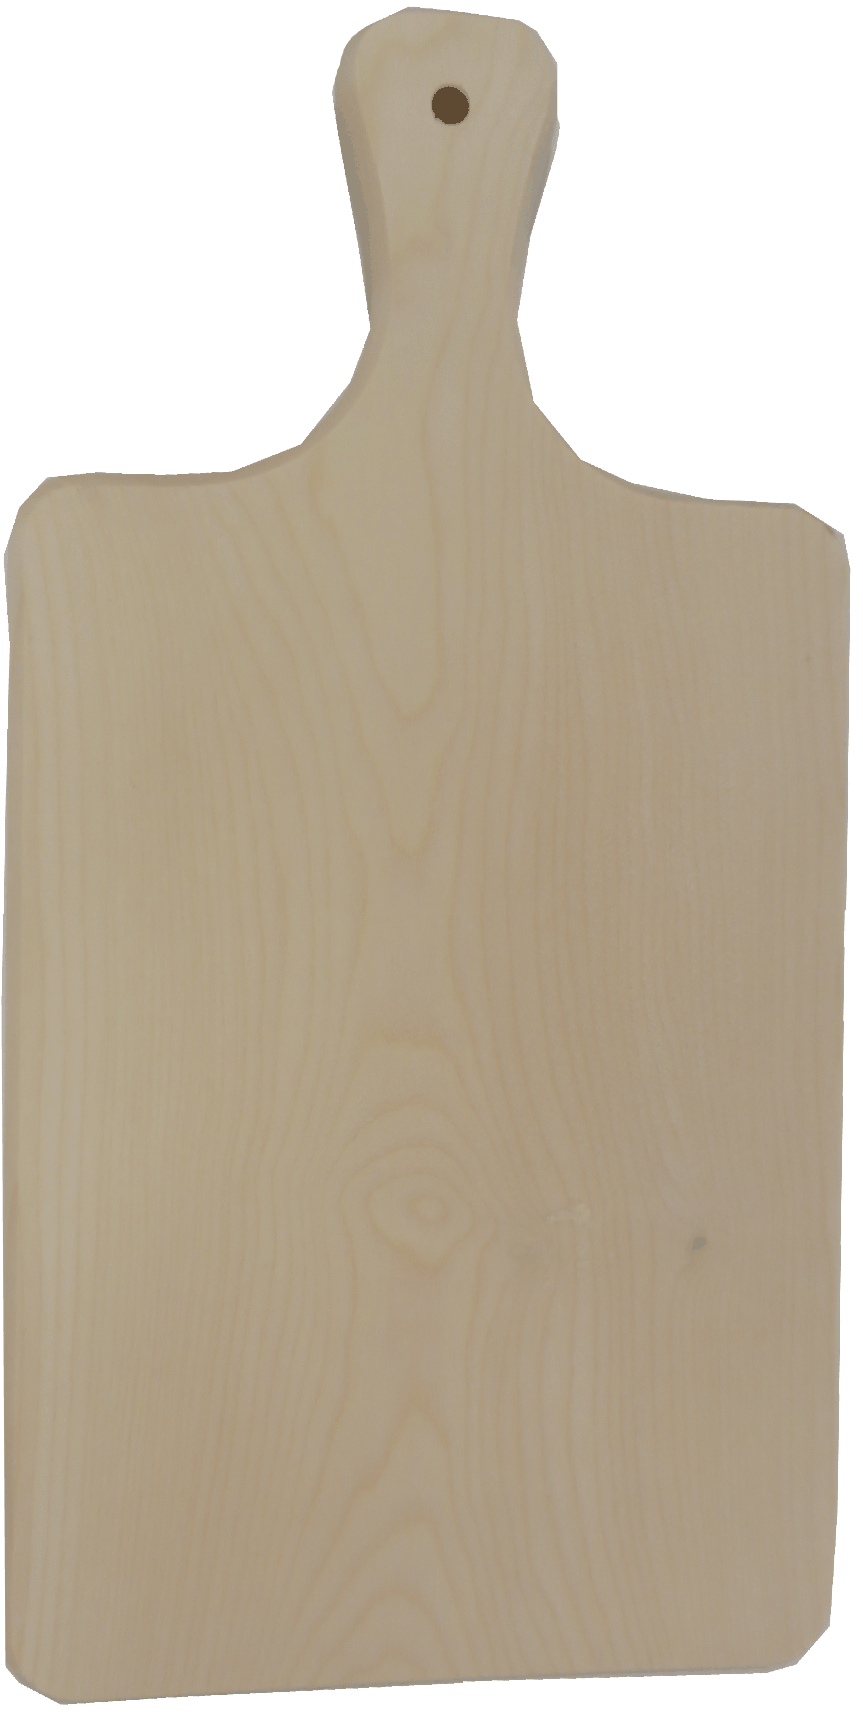 Schneidbrett mit Griff, Ahorn, 32 x 14 x 1,2 cm